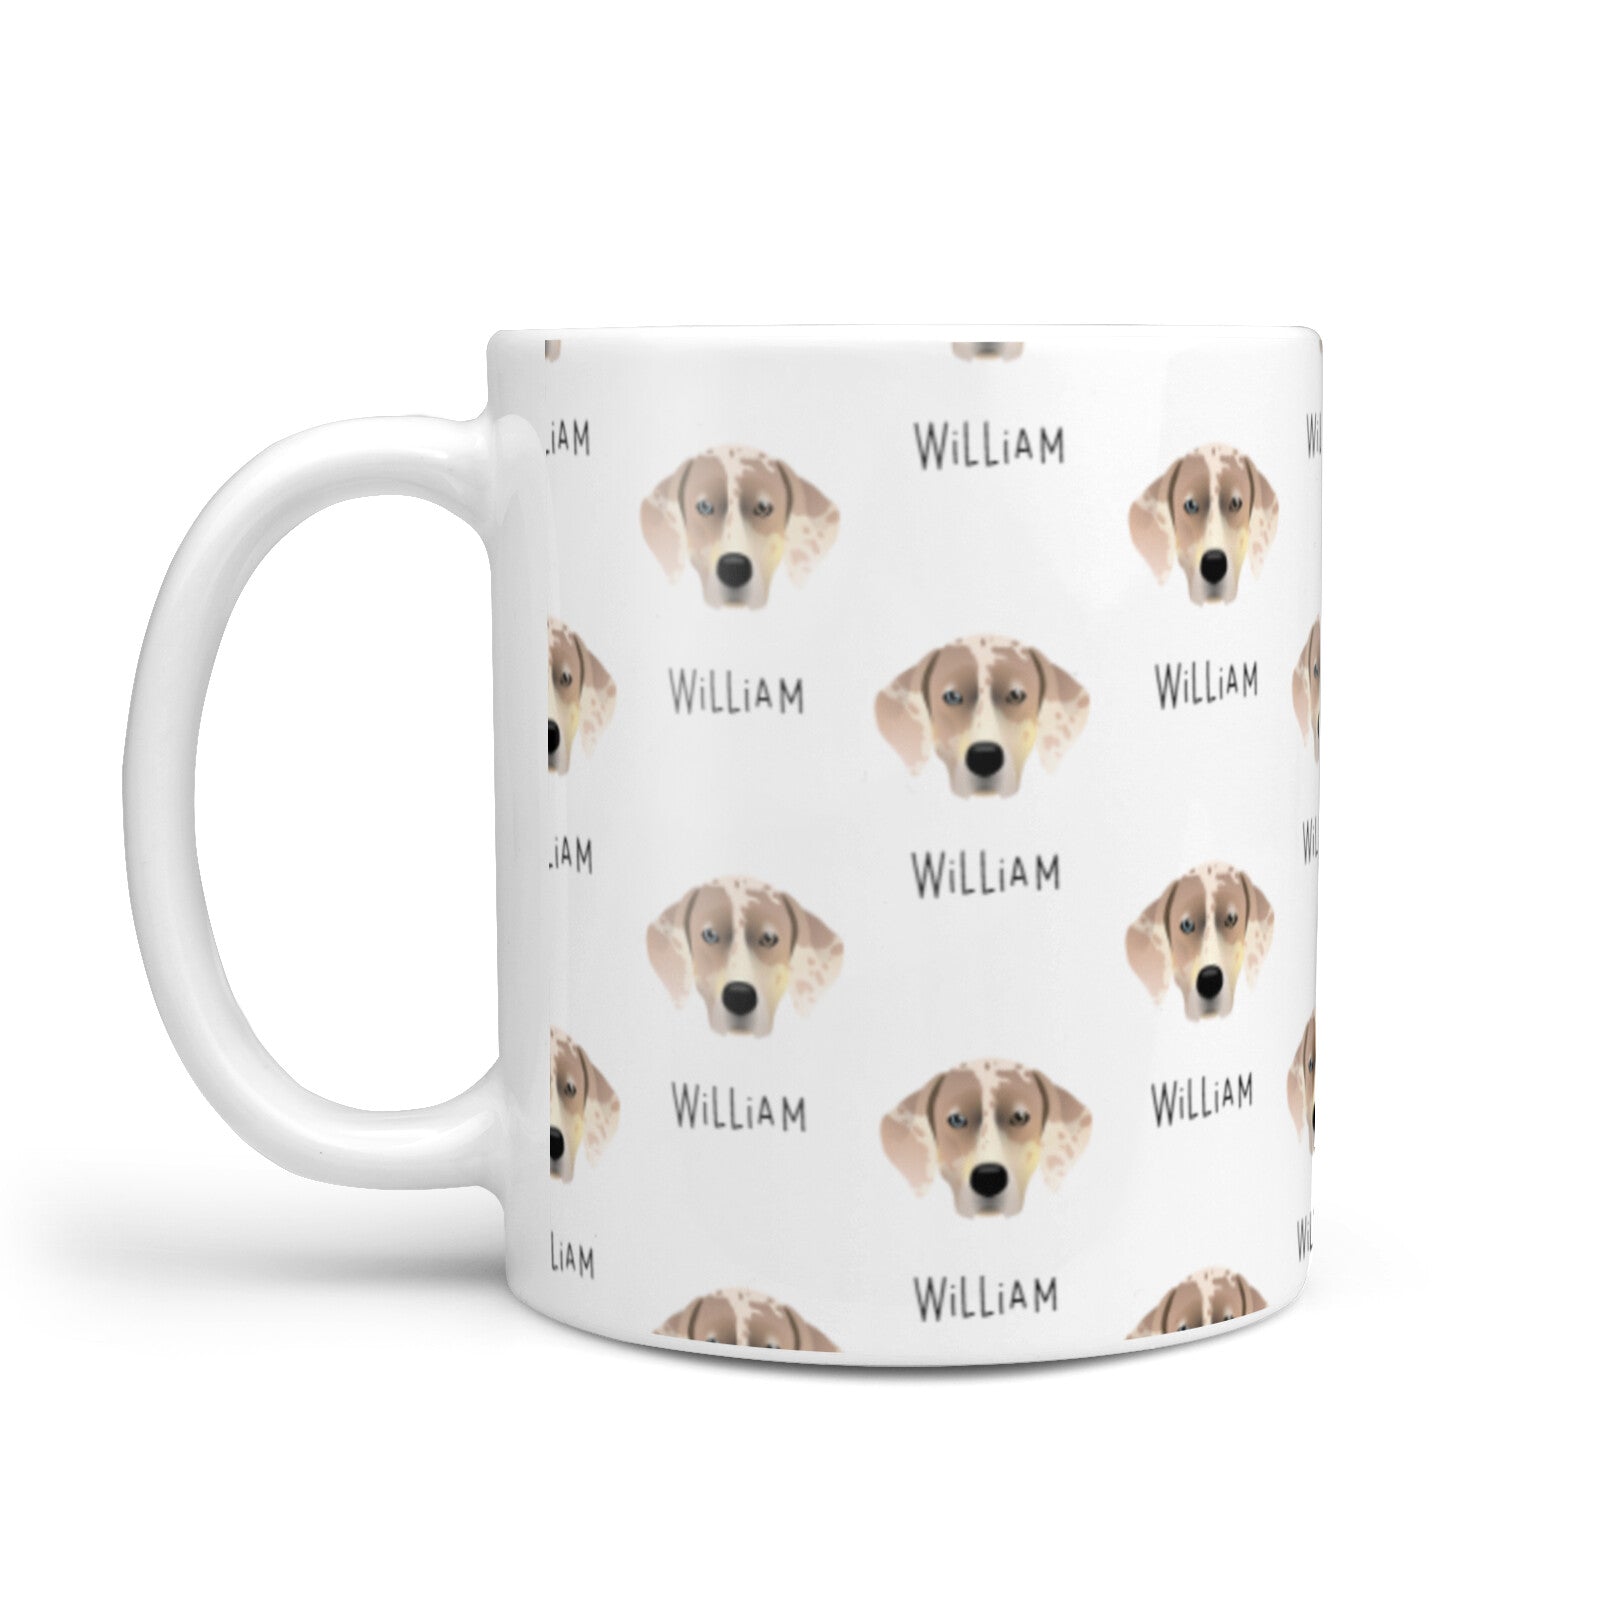 Catahoula Leopard Dog Icon with Name 10oz Mug Alternative Image 1